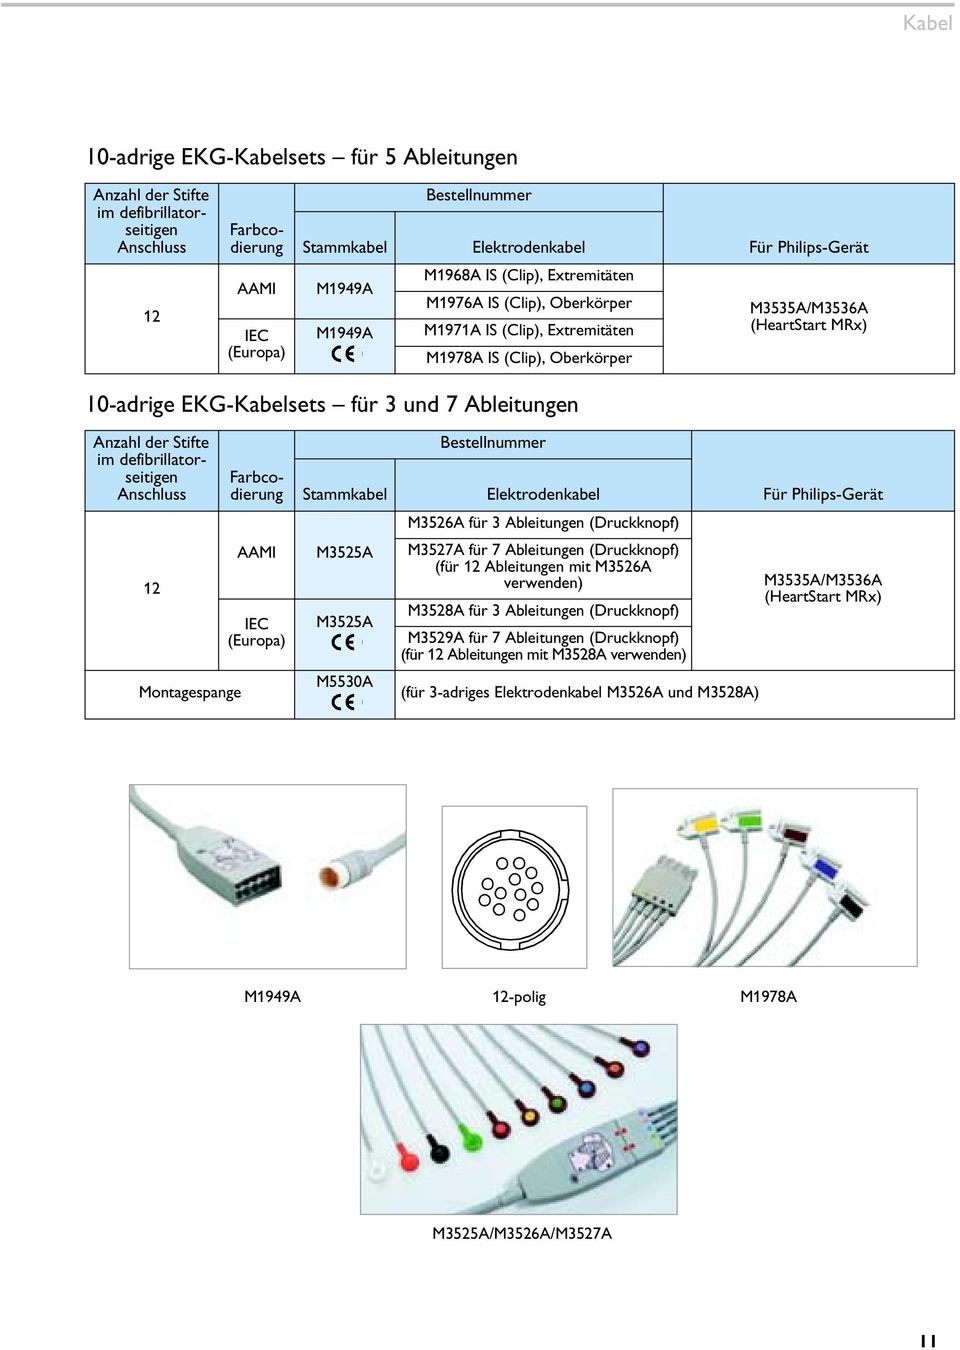 7 Ableitungen Anzahl der Stifte im defibrillatorseitigen Anschluss 12 Montagespange Farbcodierung AAMI IEC (Europa) Stammkabel M3525A M3525A M5530A Bestellnummer Elektrodenkabel M3526A für 3